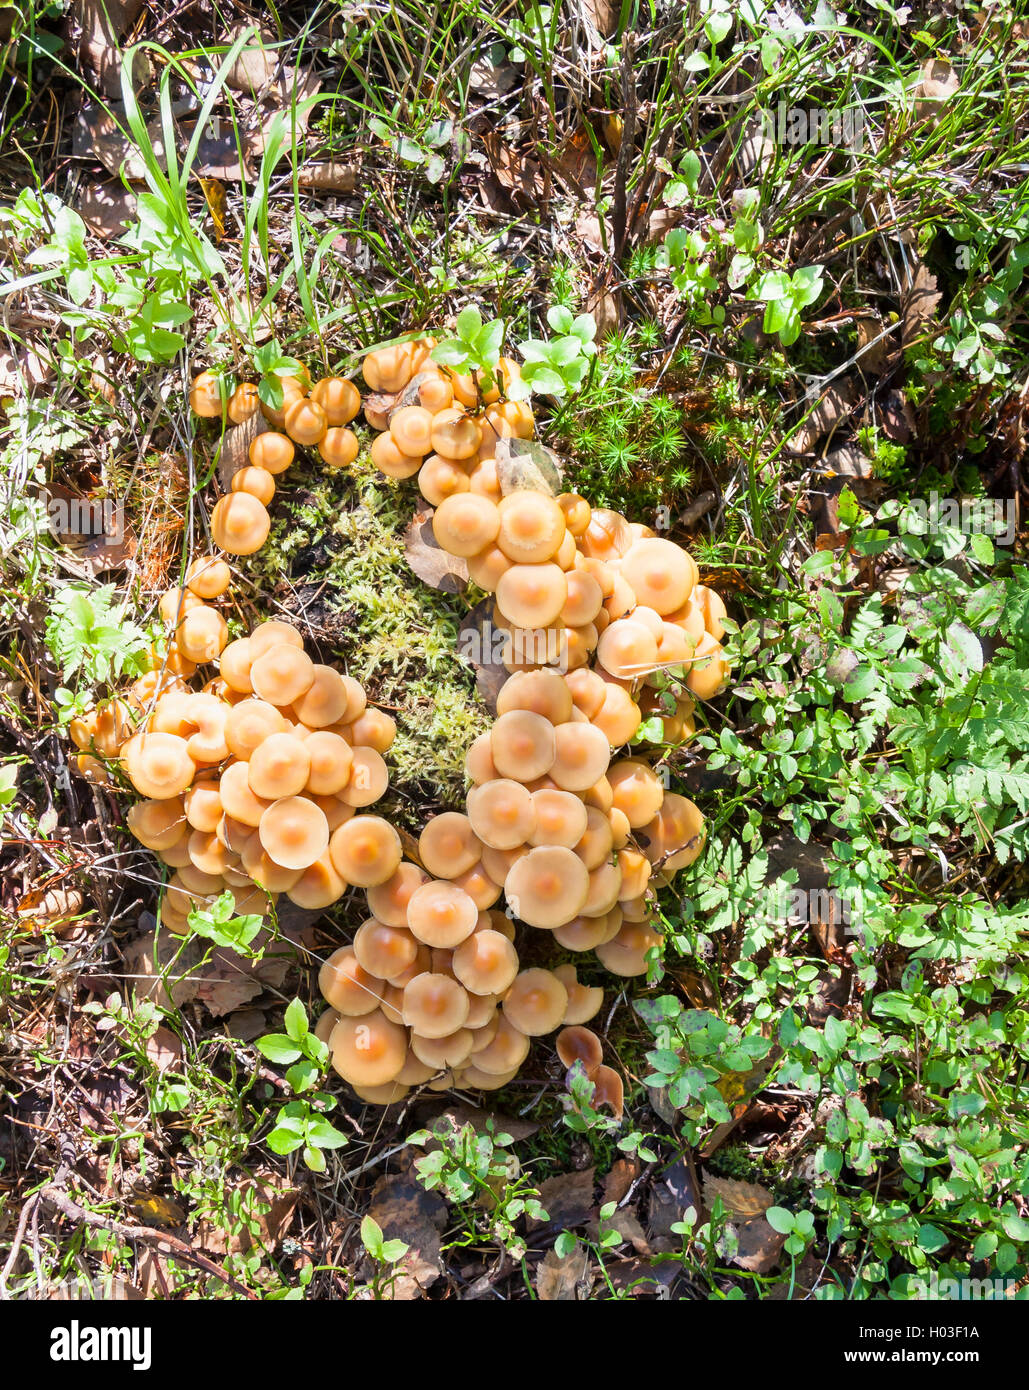 Beaucoup de brun clair ou orange les champignons poussent dans un bundle Banque D'Images